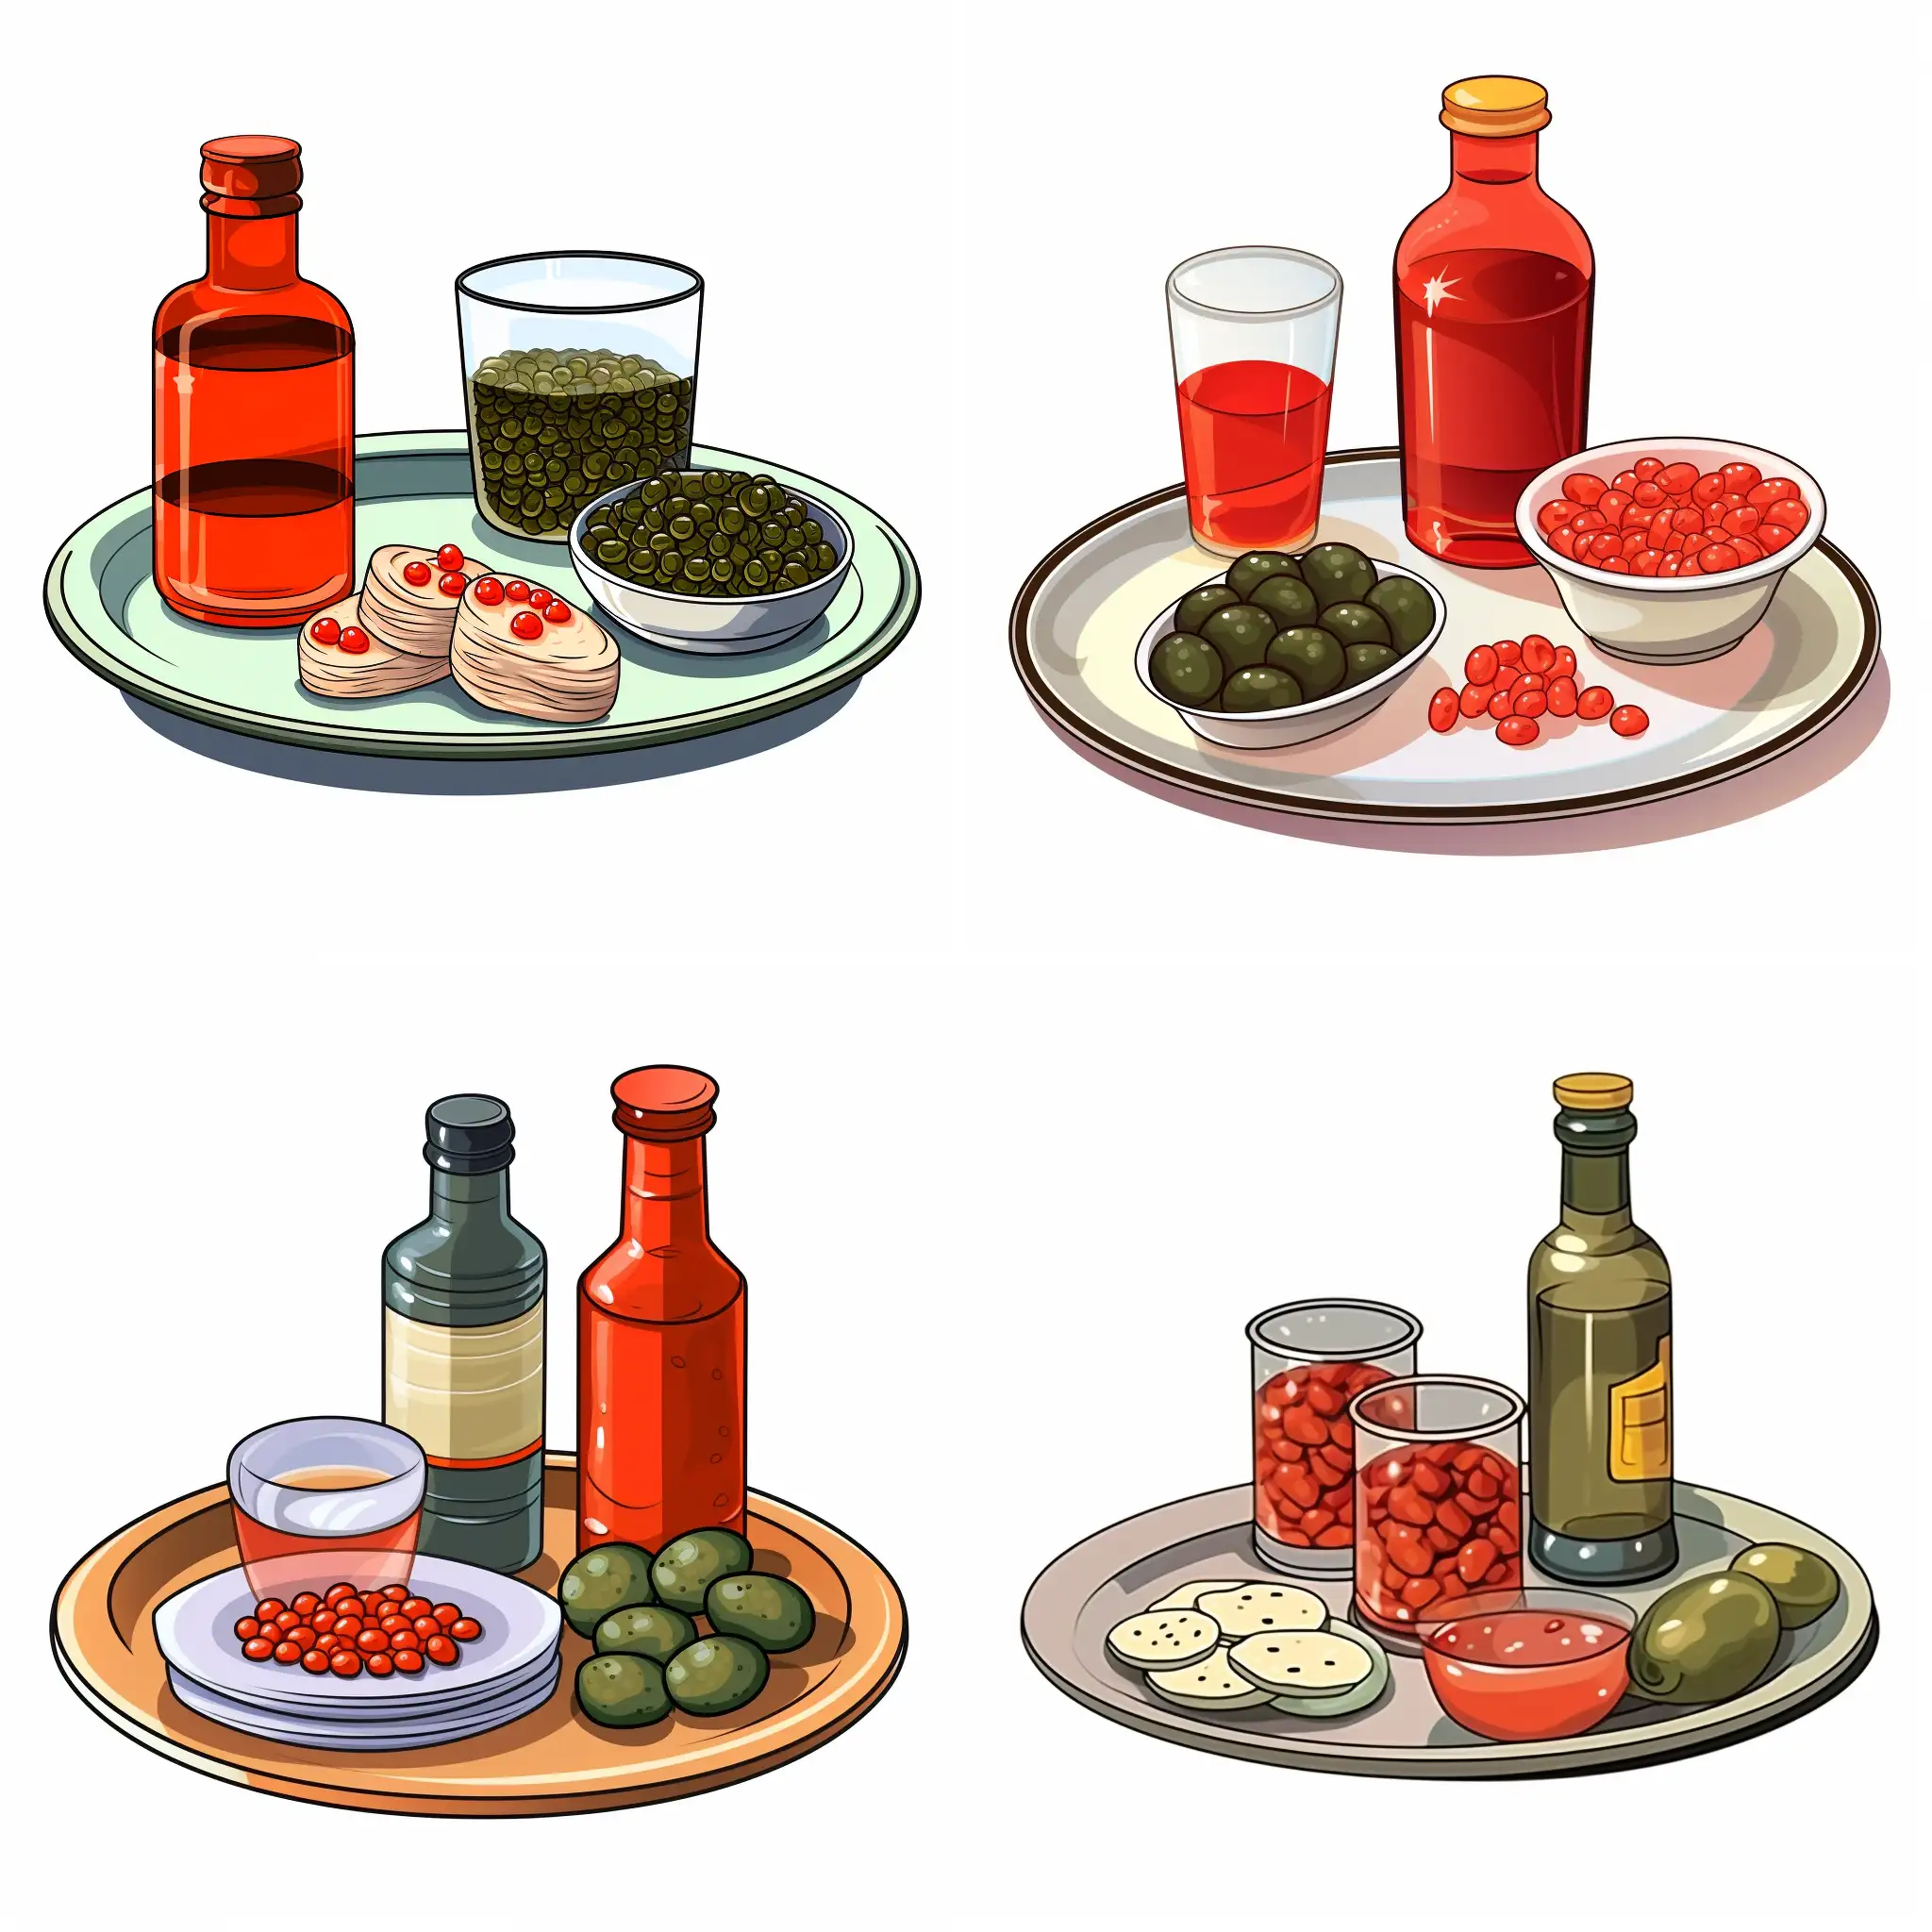 Бутылка водки, огурцы в банке, красная икра на блюде, две рюмки, на белом фоне, мультяшный стиль, иллюстрация